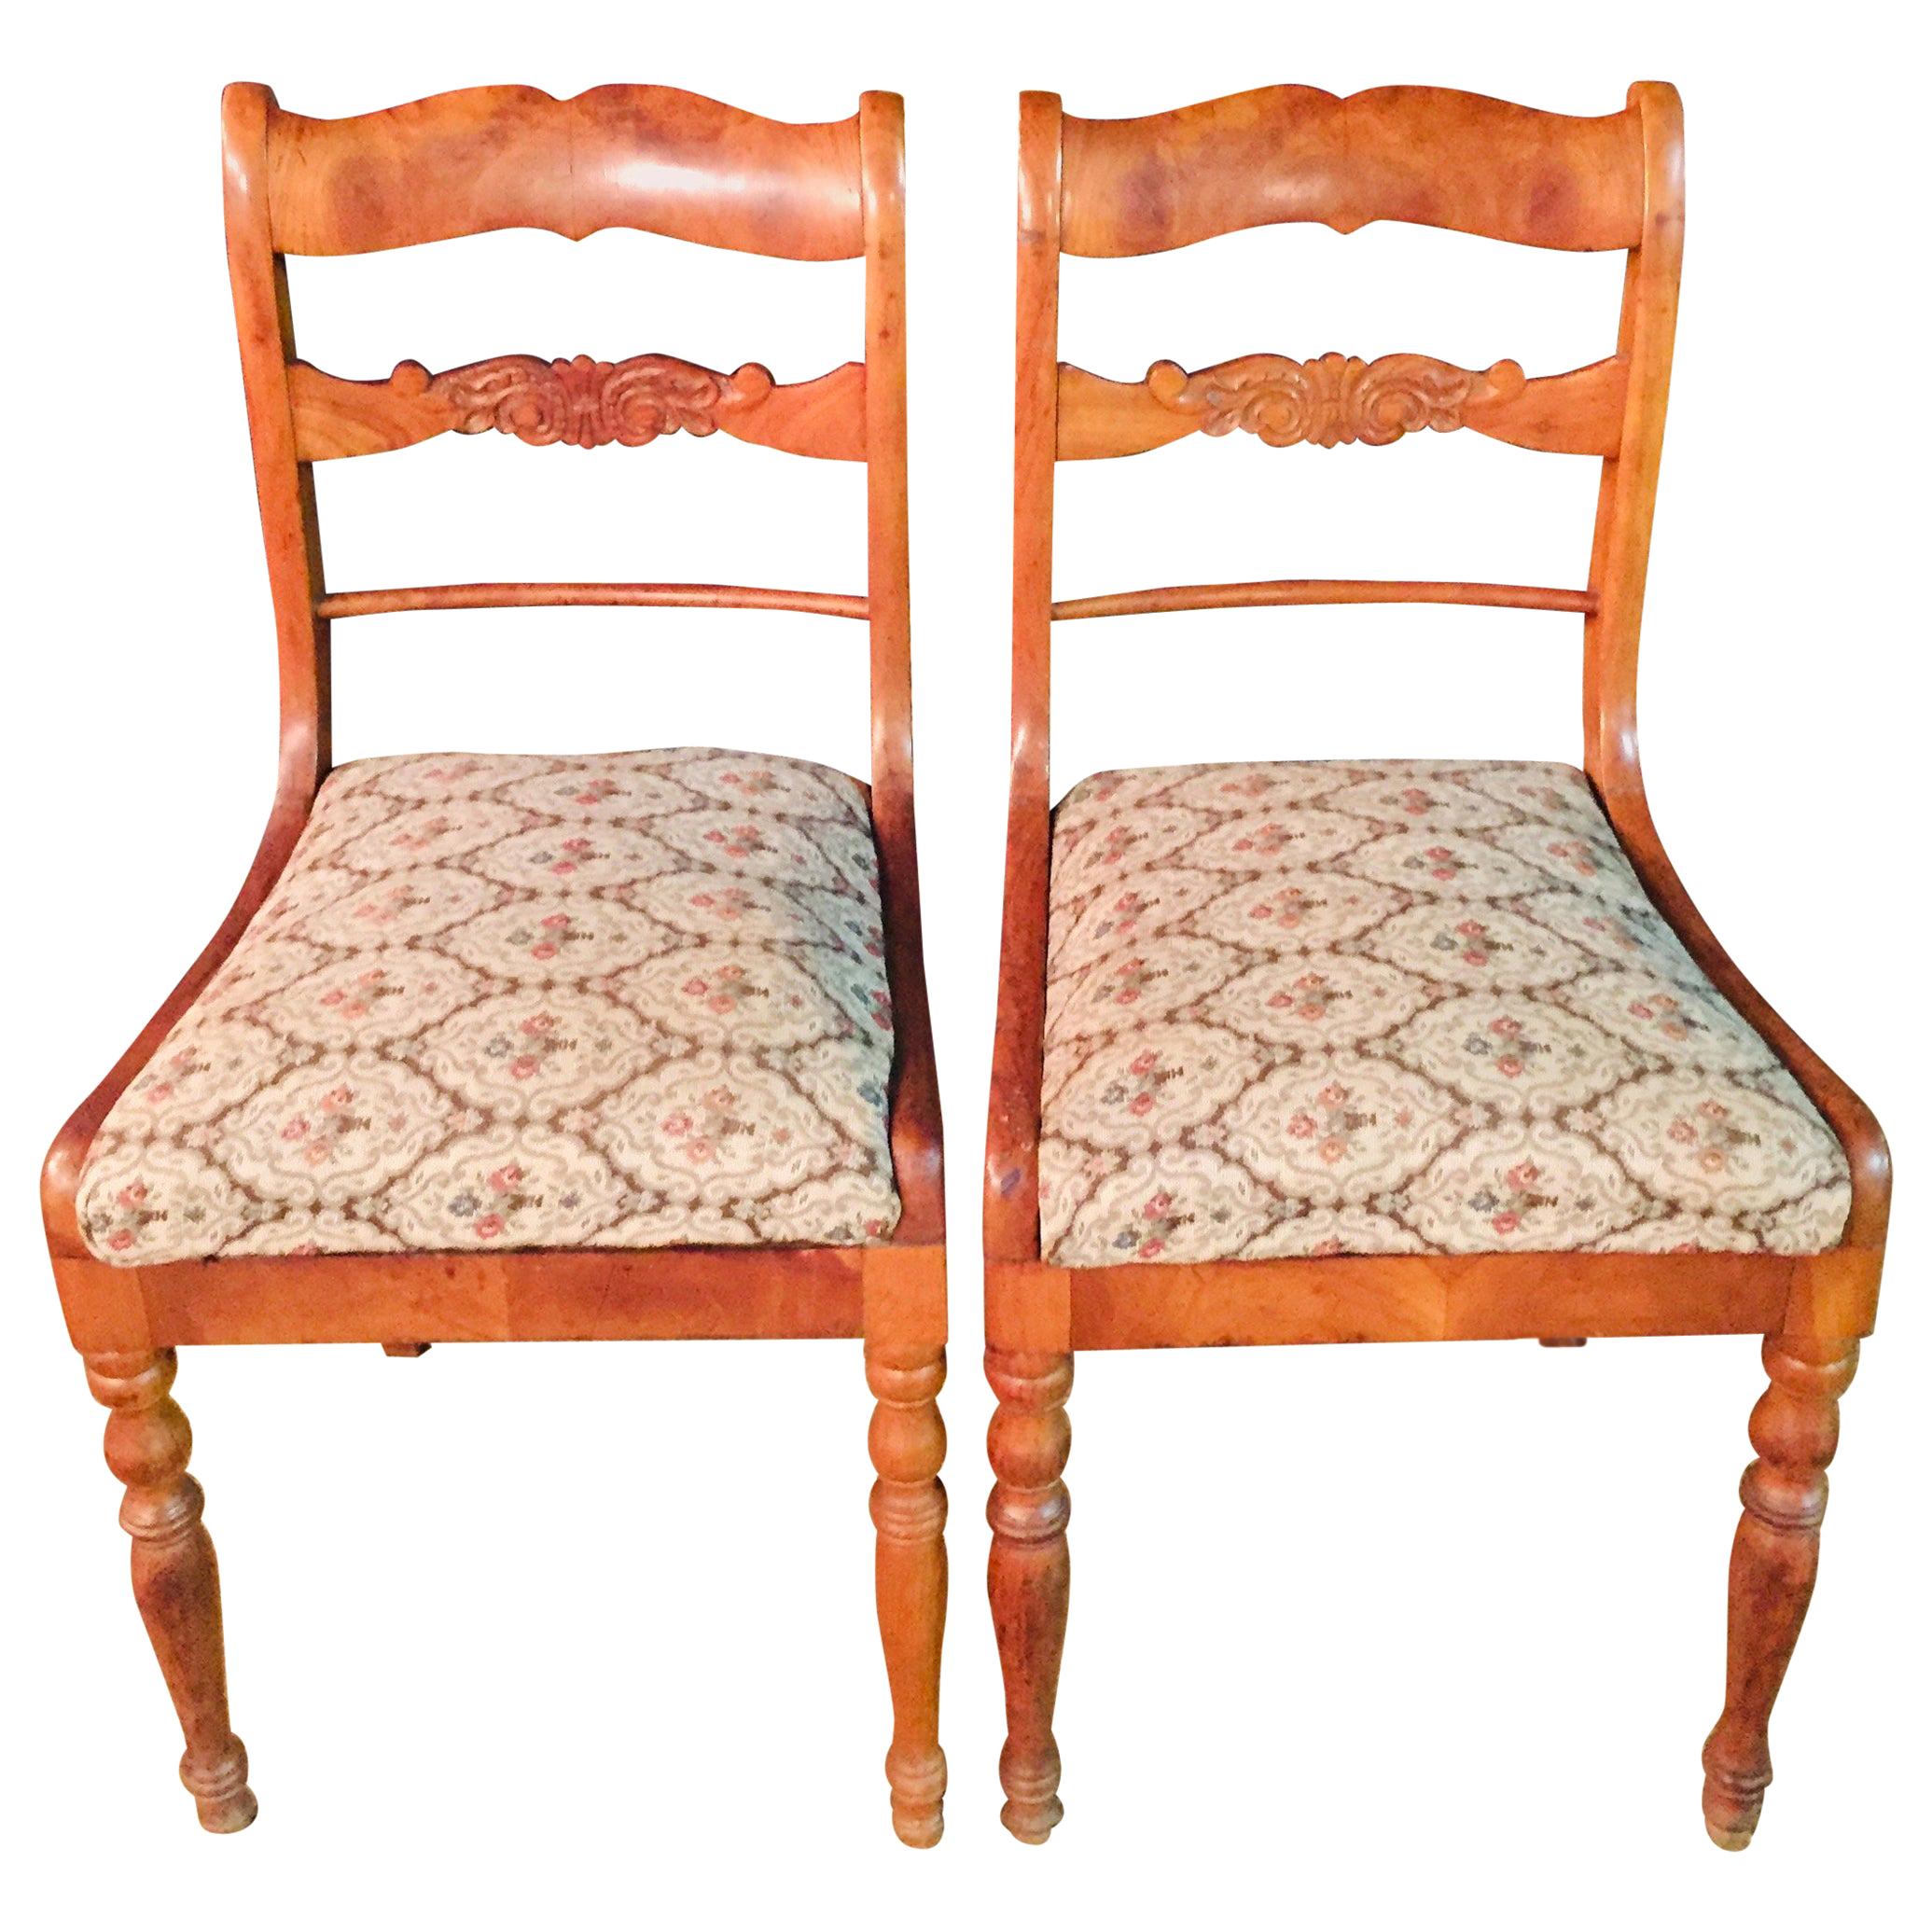 Pair of Interesting Biedermeier Chairs antique circa 1840 Cherry Wood  veneer